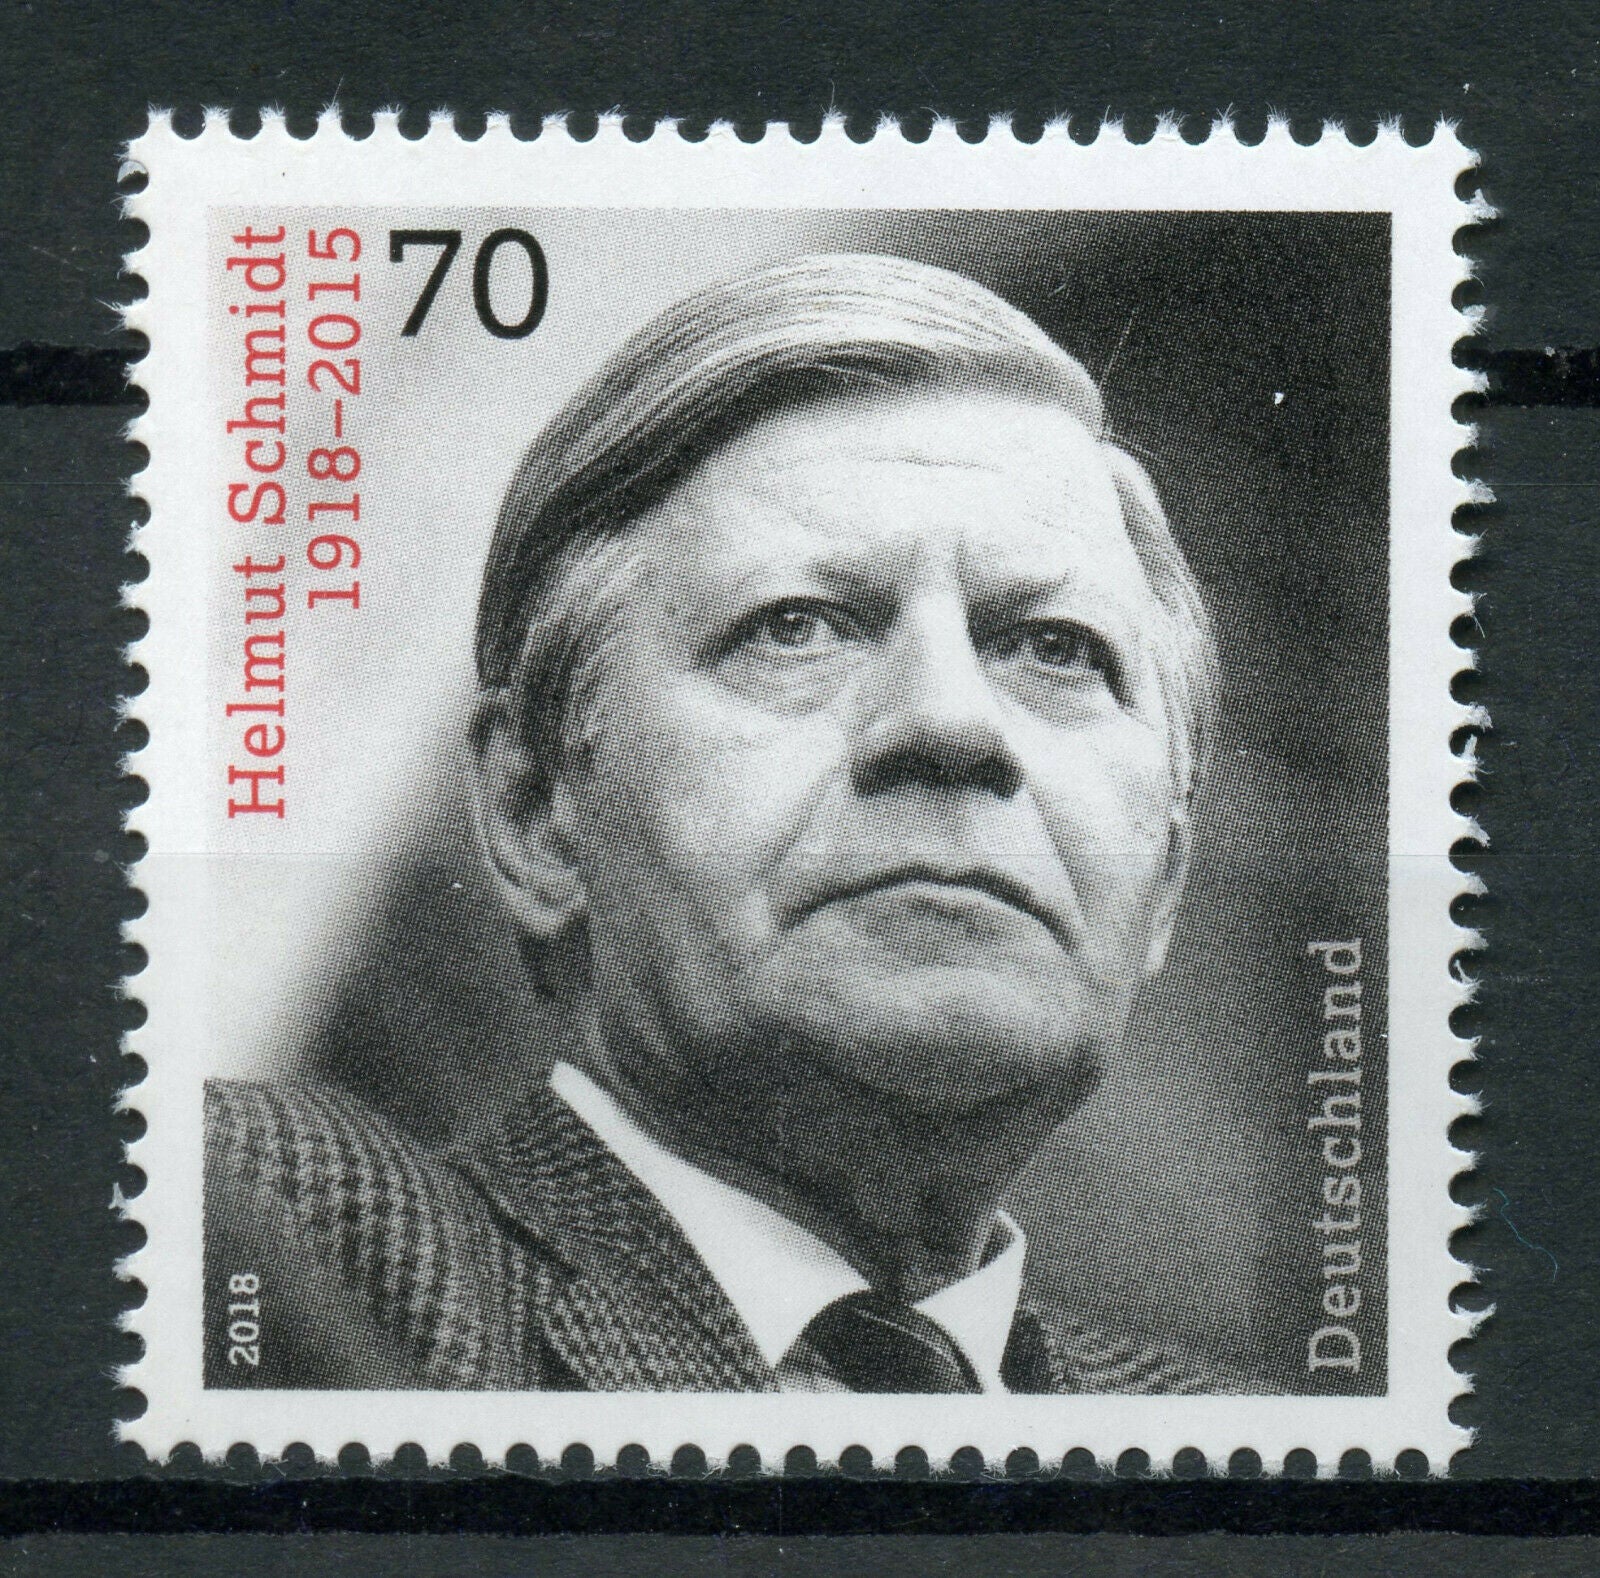 Germany 2018 MNH Helmut Schmidt Chancellor 1v Set Politicians People Stamps